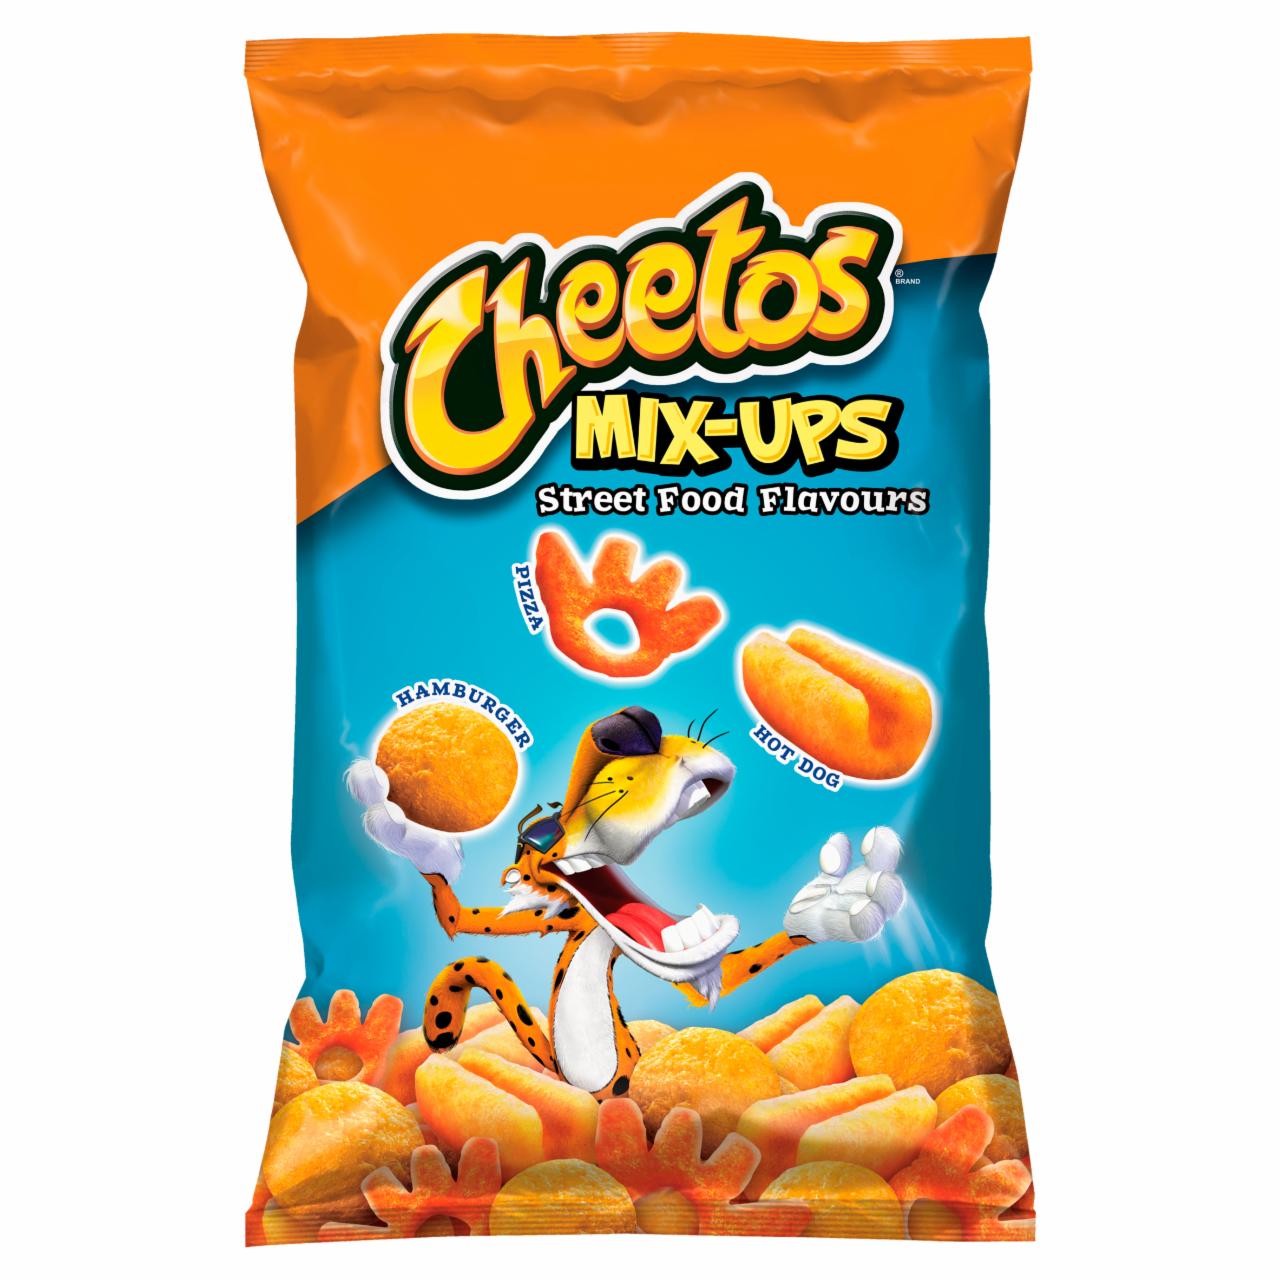 Zdjęcia - Cheetos Mix-Ups Street Food Flavours Mieszanka chrupek kukurydzianych 130 g